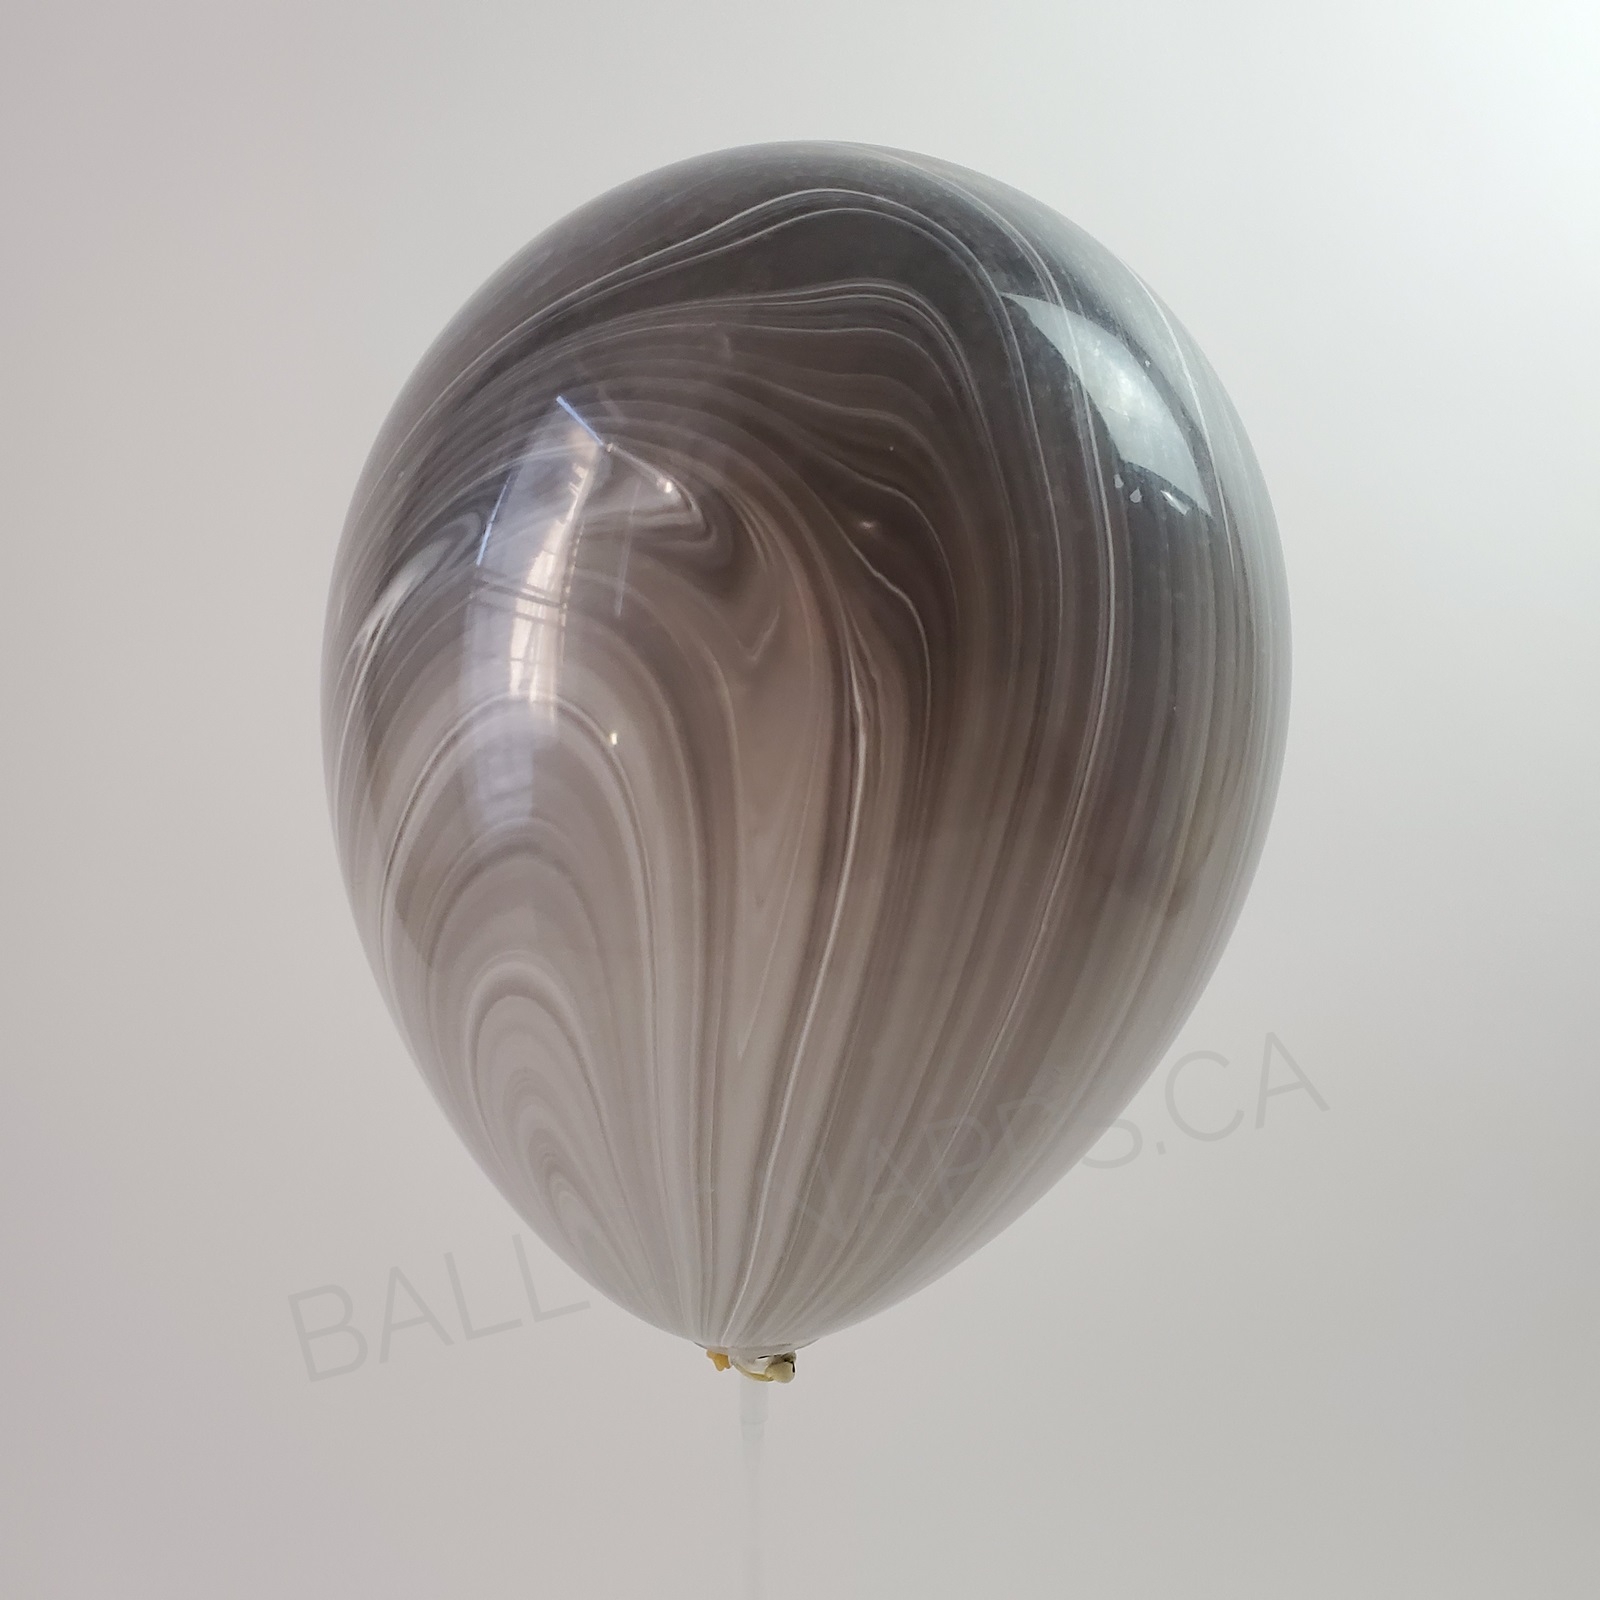 balloon texture 30